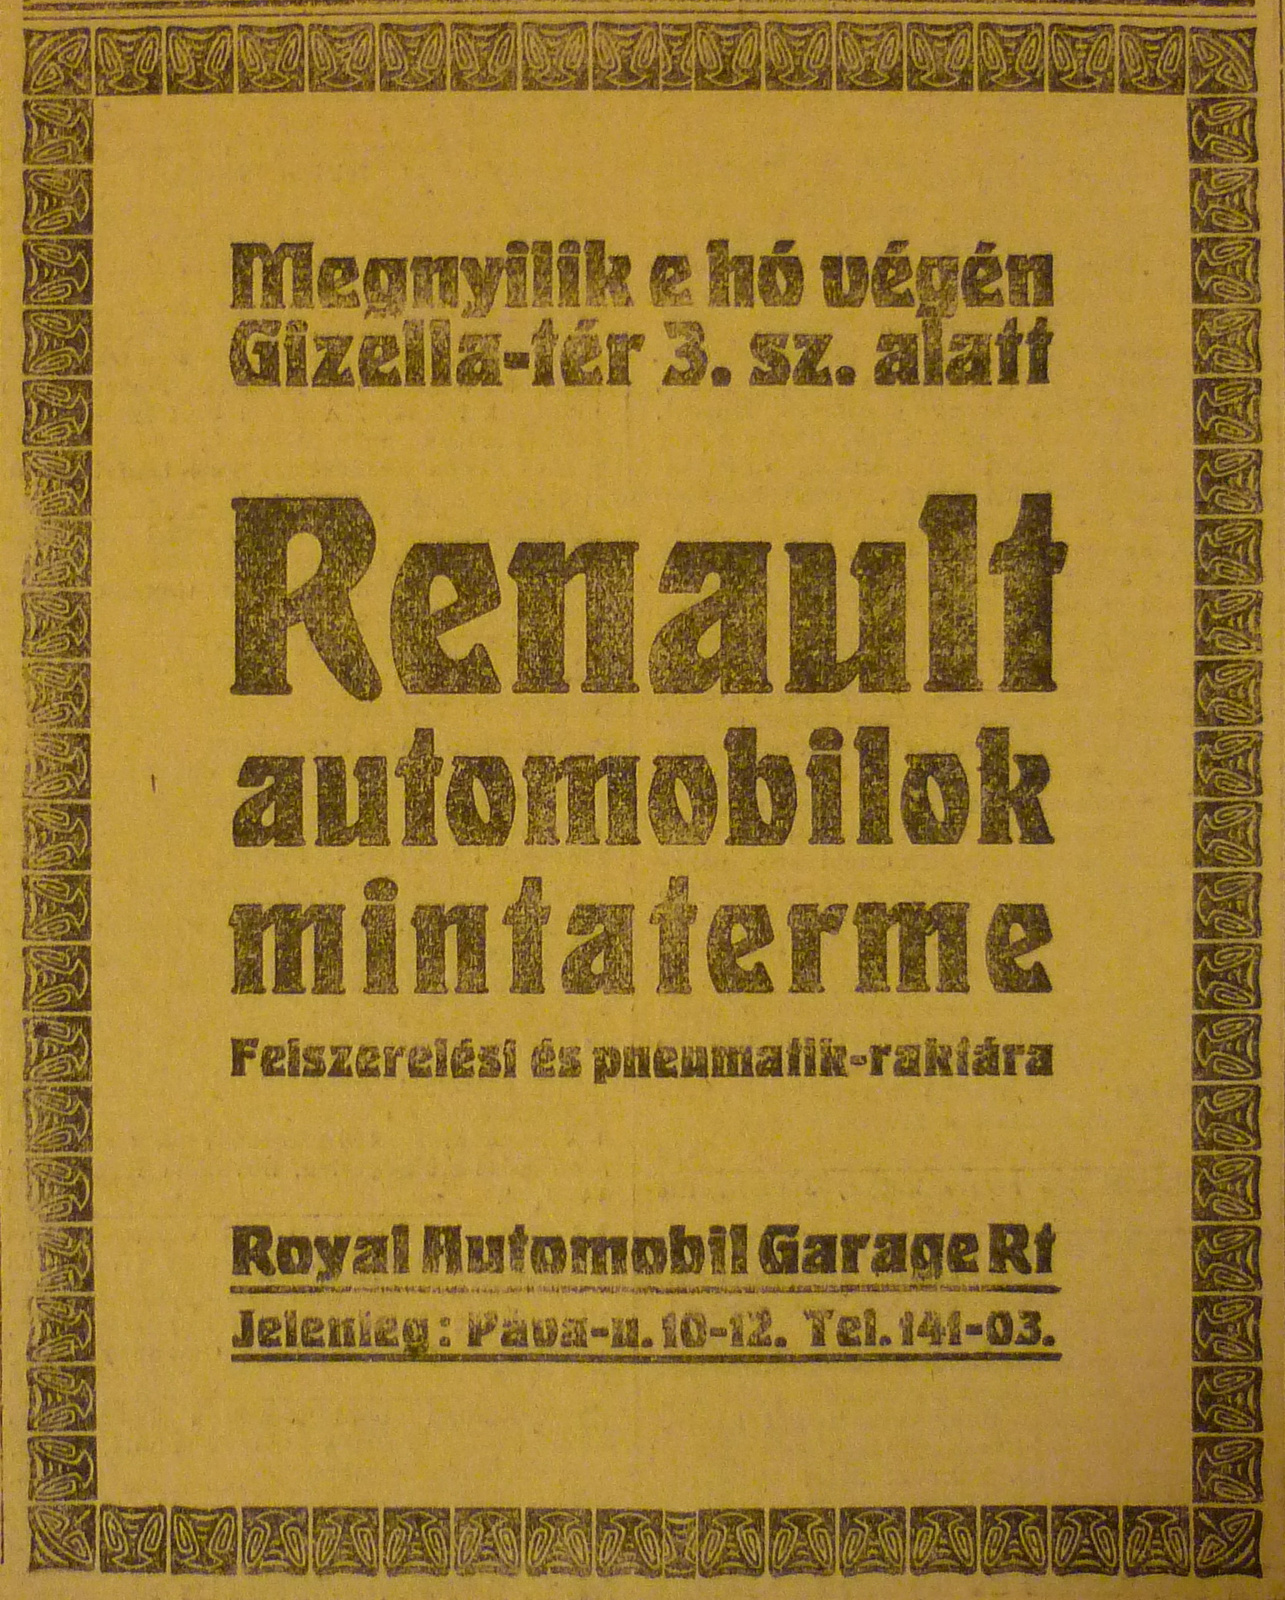 VorosmartyTer3-Renault-1913Junius-AzEstHirdetes